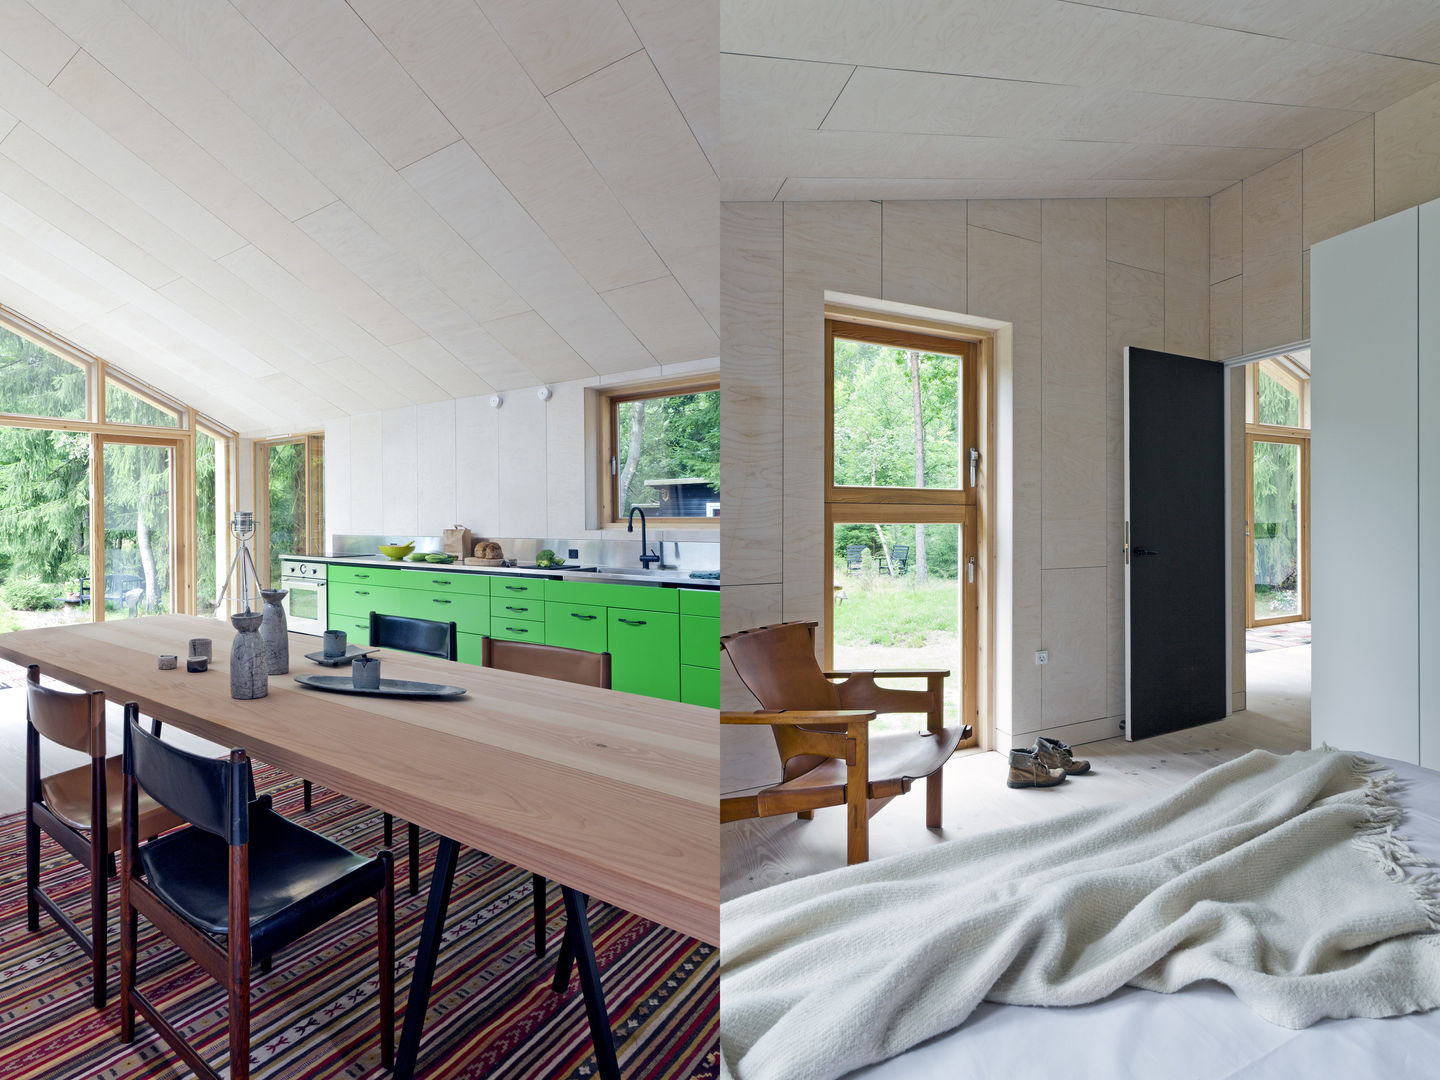 Kitchen & Bedroom Facit Homes Baños de estilo moderno